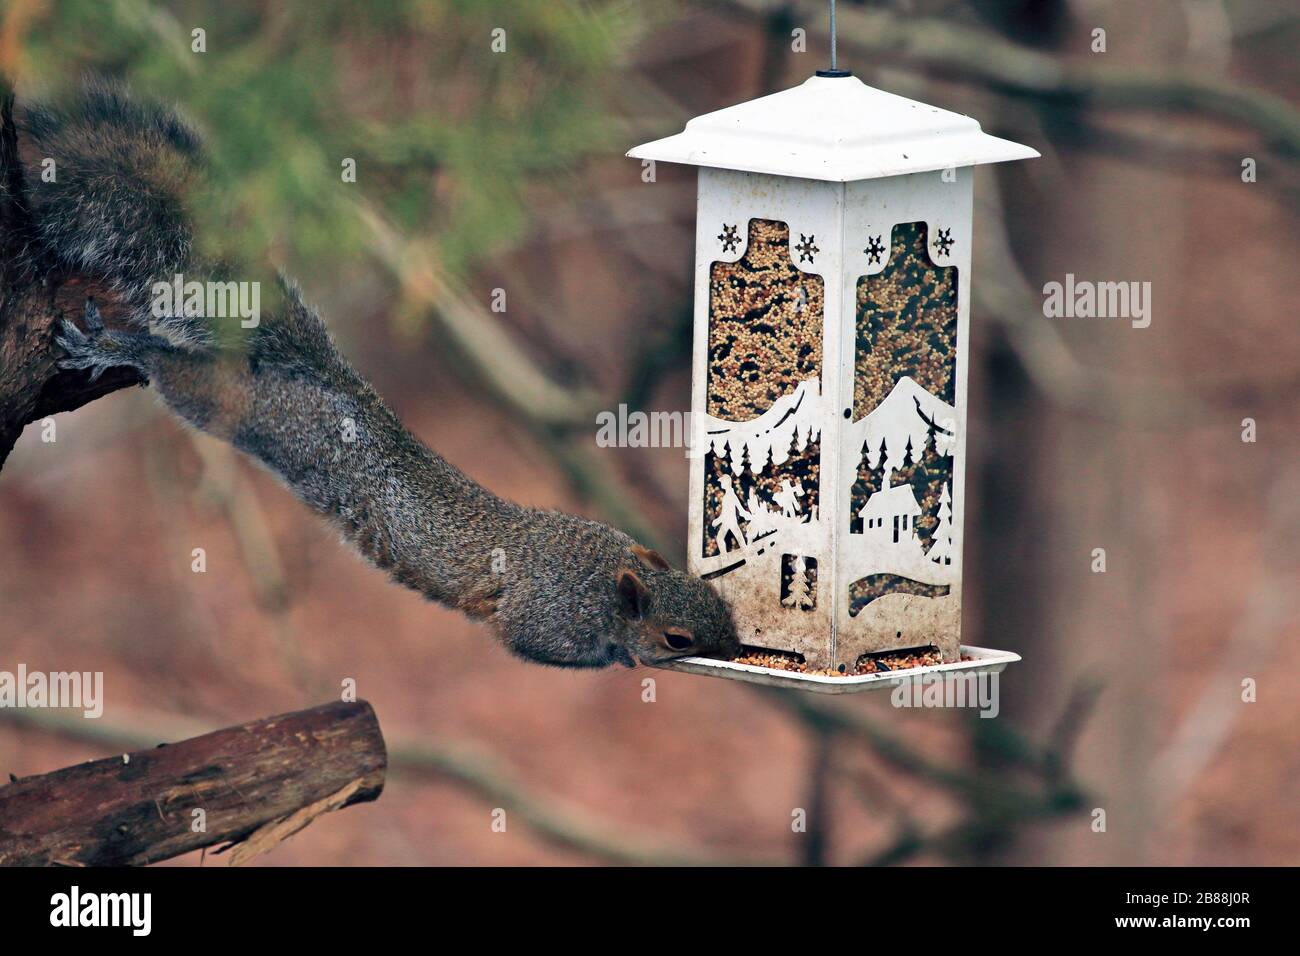 An Eastern Gray Squirrel, Sciurus carilinensis, raiding a bird feeder. Stock Photo